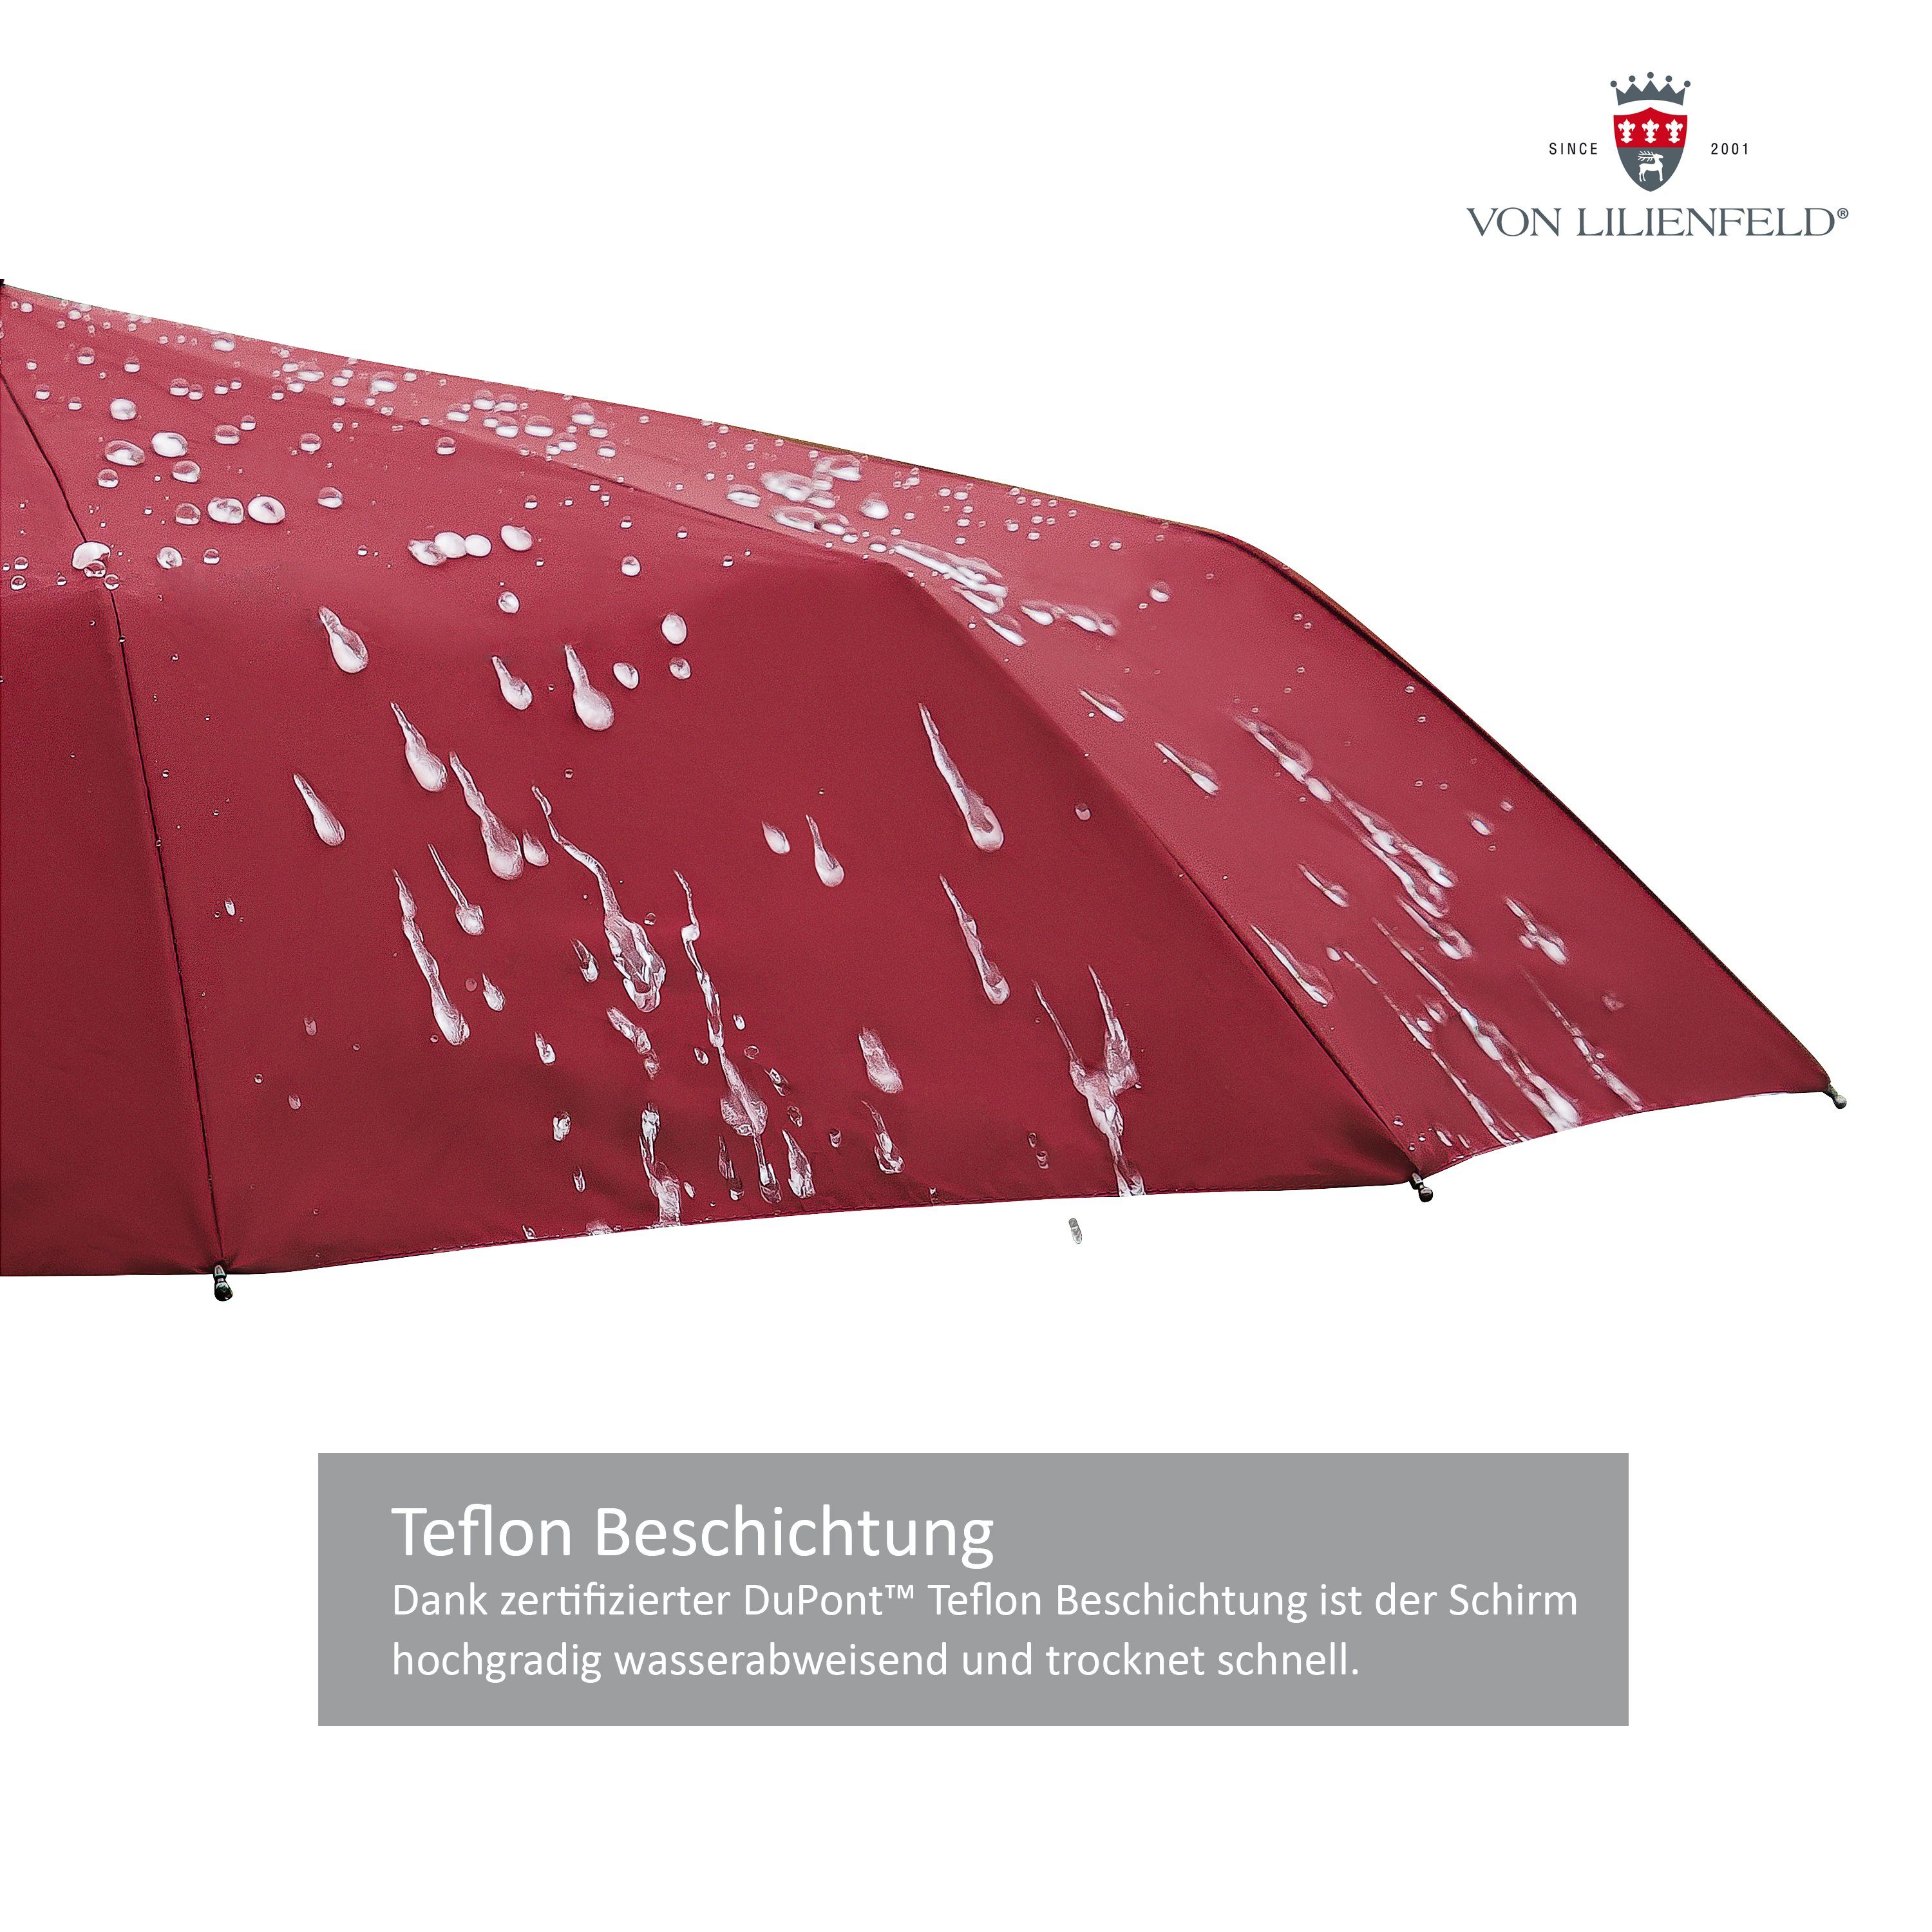 von Lilienfeld Auf-Zu-Automatik Clark Taschenregenschirm Teflonbeschichtung, extrem burgunder wasserabweisend, Reise-Etu Schirm mit schnelltrocknend